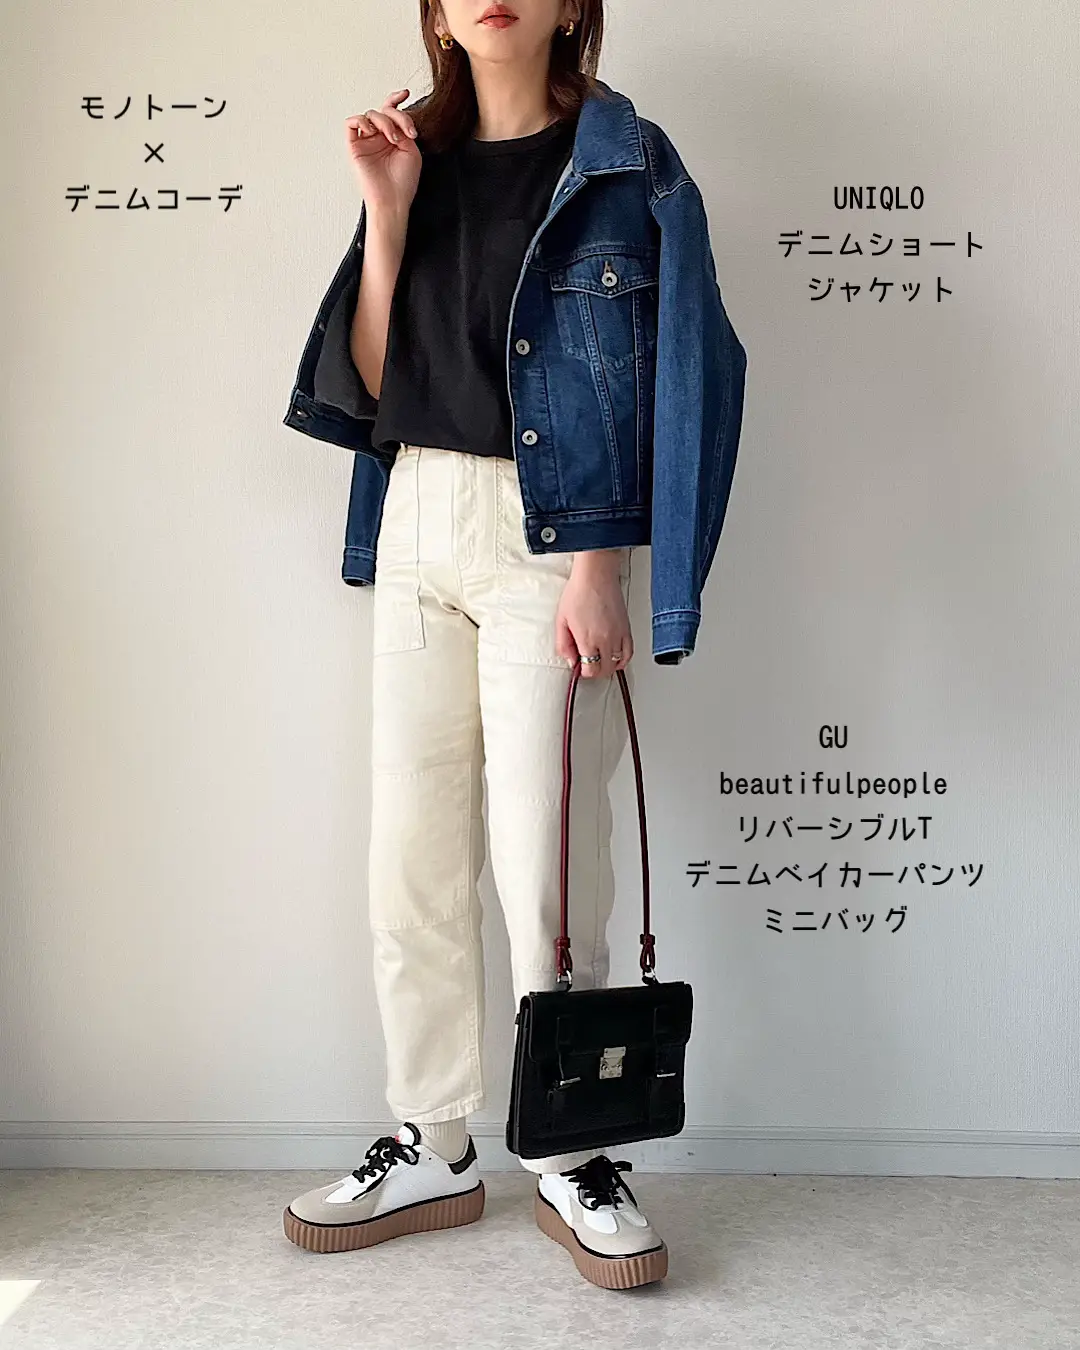 GU/UNIQLO 春夏お気に入りコーデ   maiko wearが投稿したフォトブック